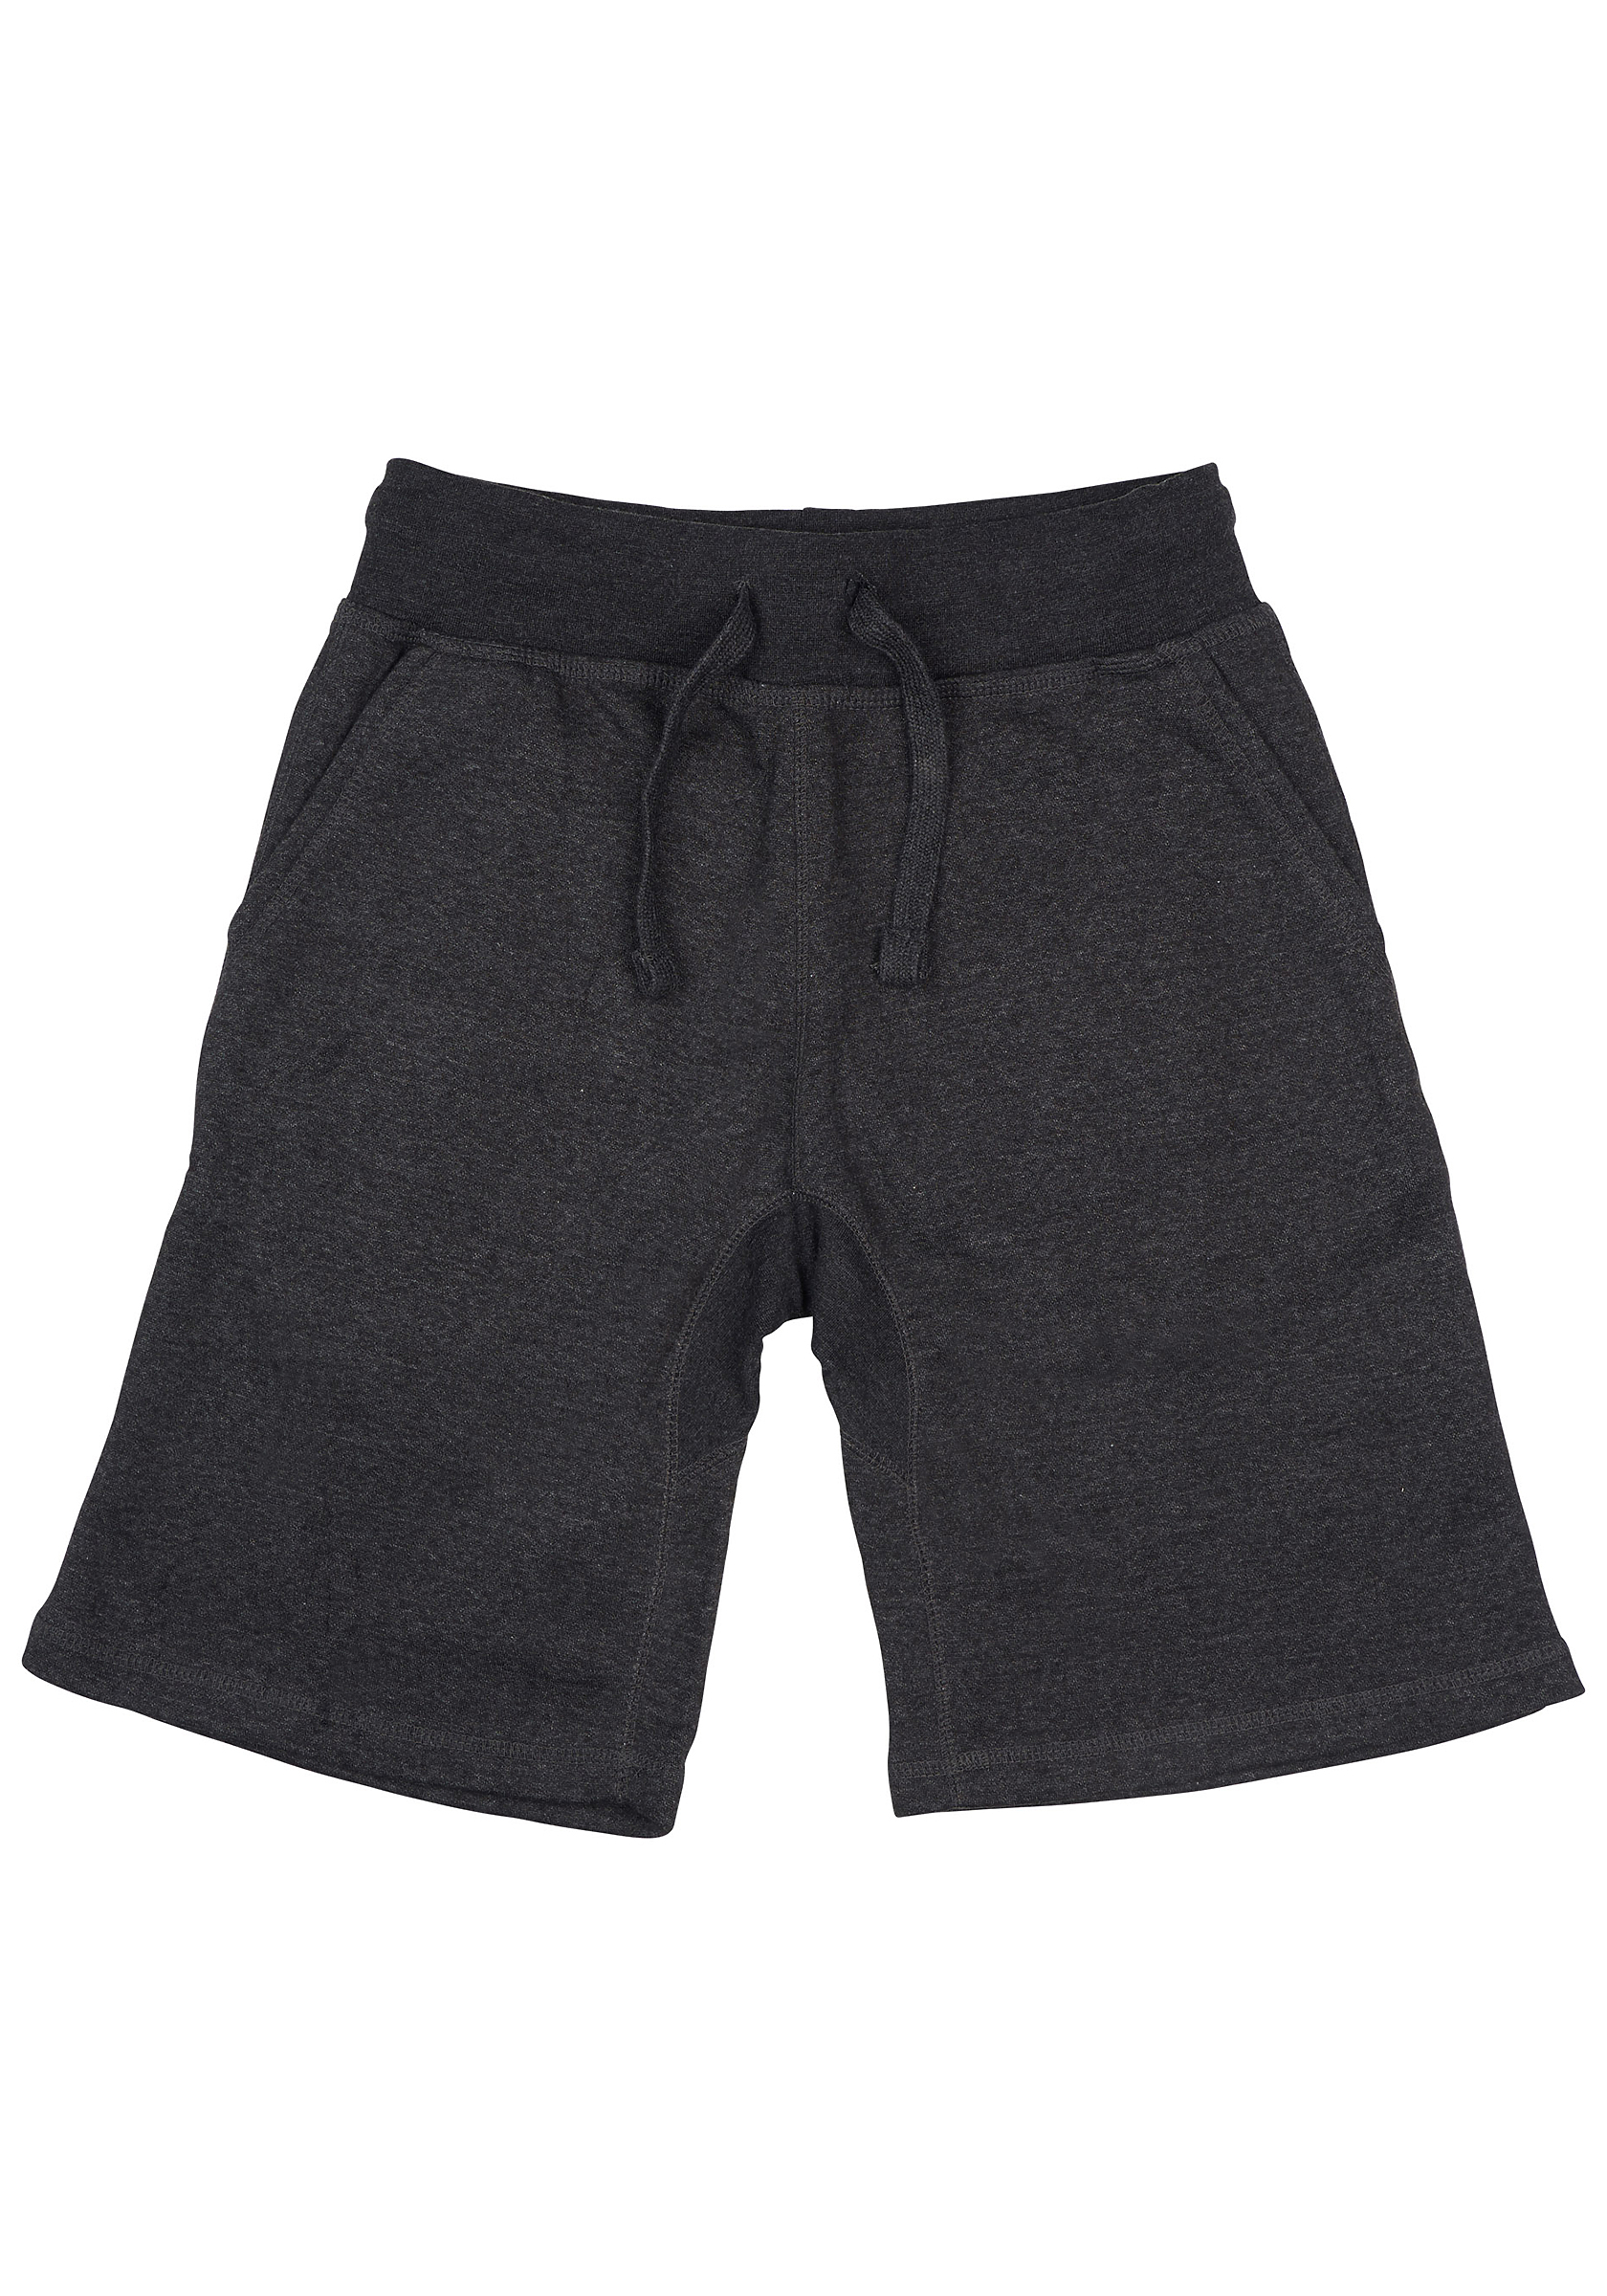 mens shorts Unisex Premium Short